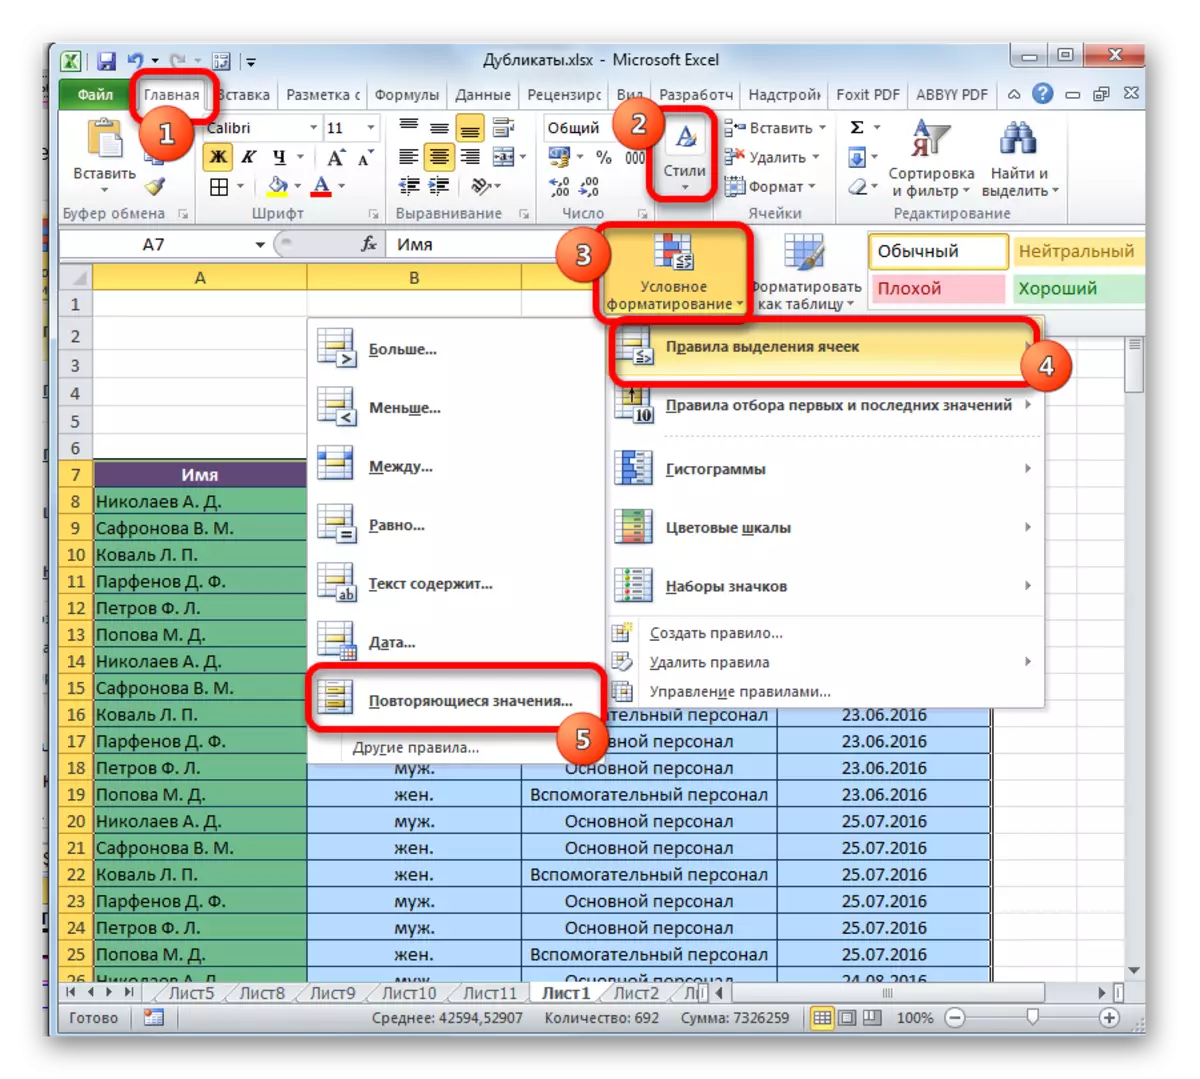 Microsoft Excel တွင်ခြွင်းချက်ပုံစံချရန်အကူးအပြောင်း